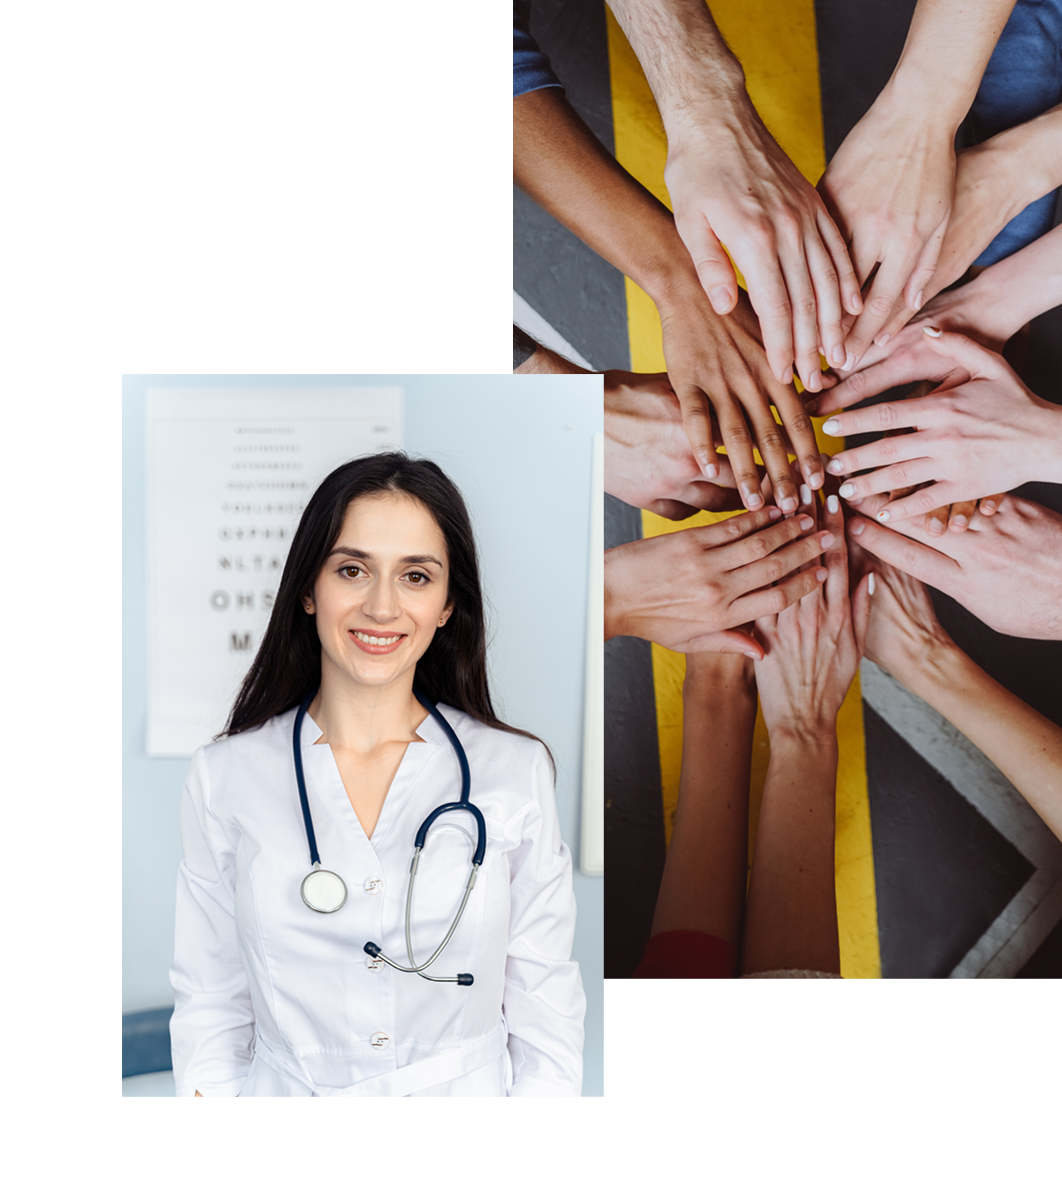 Imagine compusă din două fotografii în care una înfățișează o doamnă doctor, iar a doua fotografie prezintă mai multe mâini unite